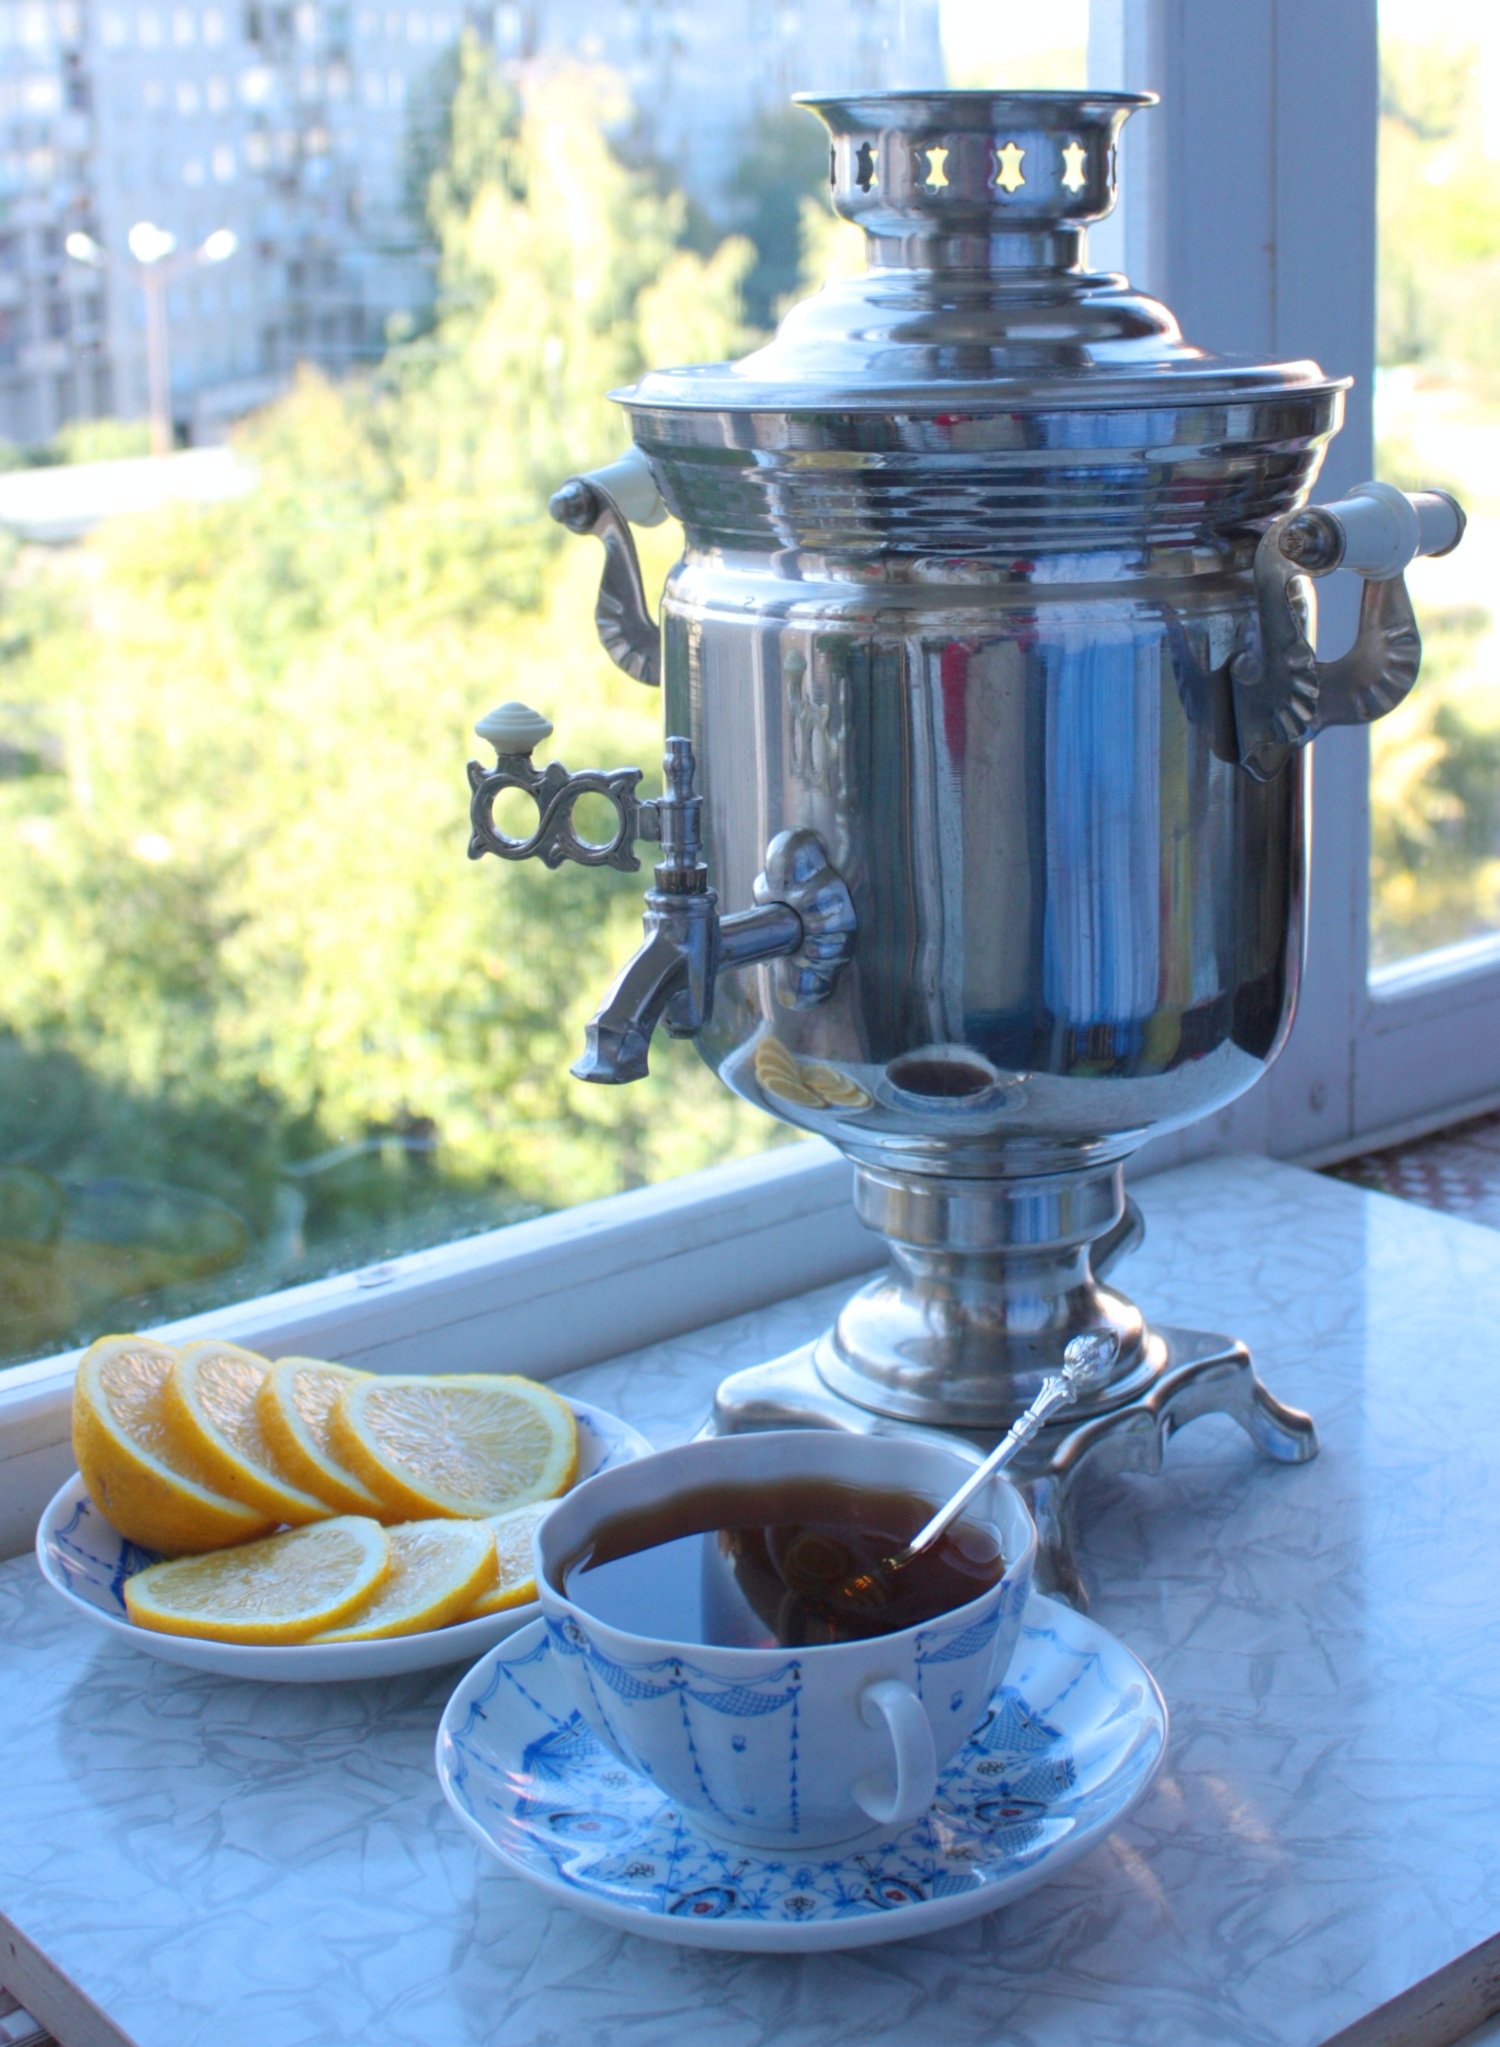 Чай на балконе 